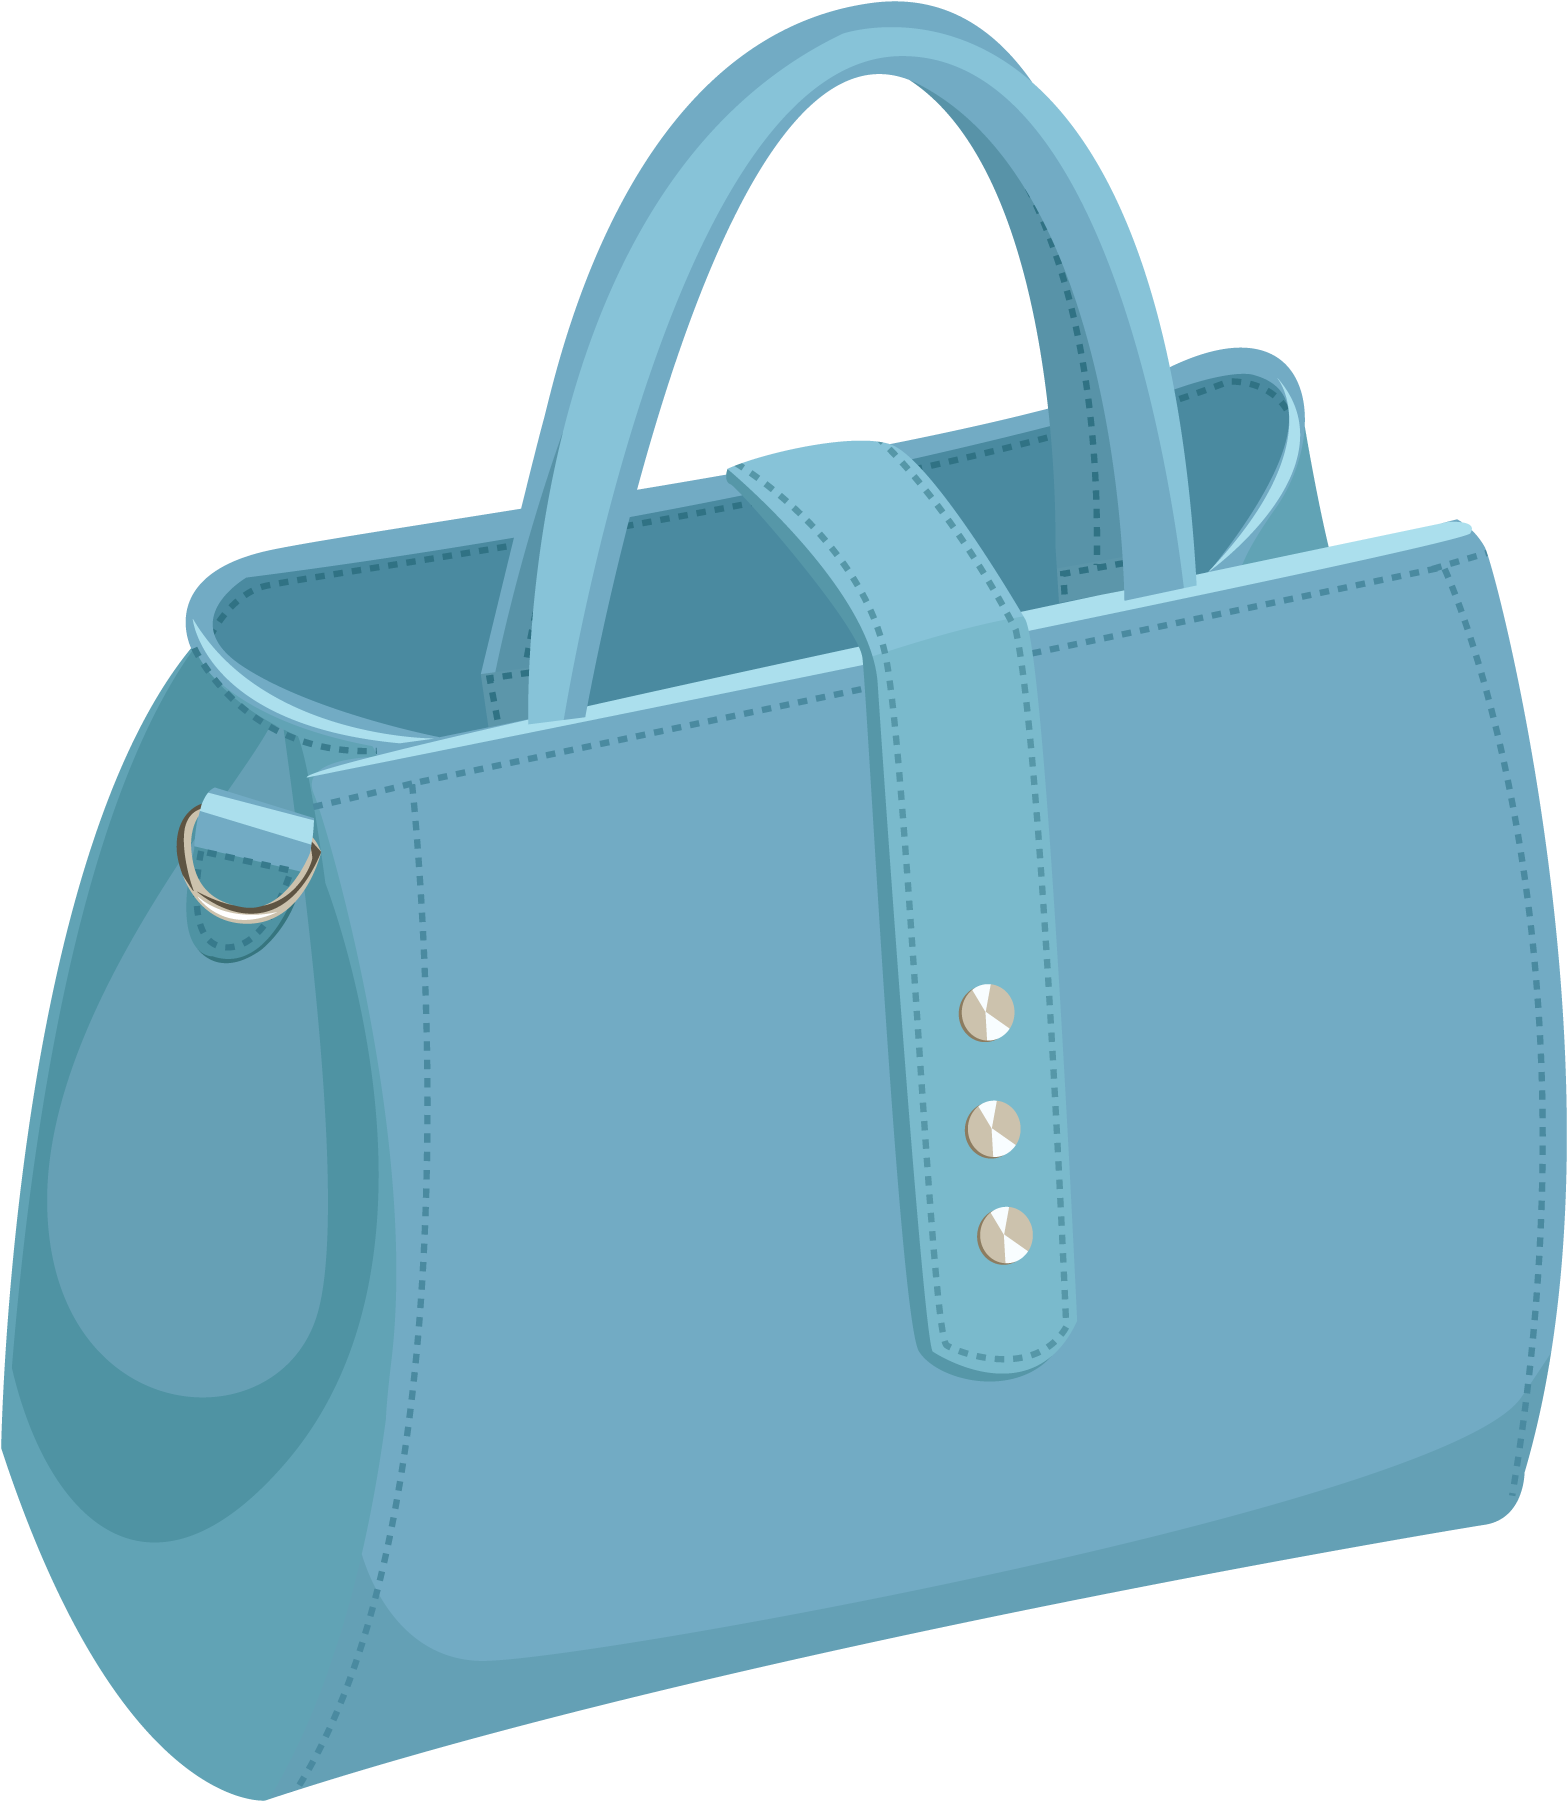 Handbag Vector Art PNG Images | Free Download On Pngtree